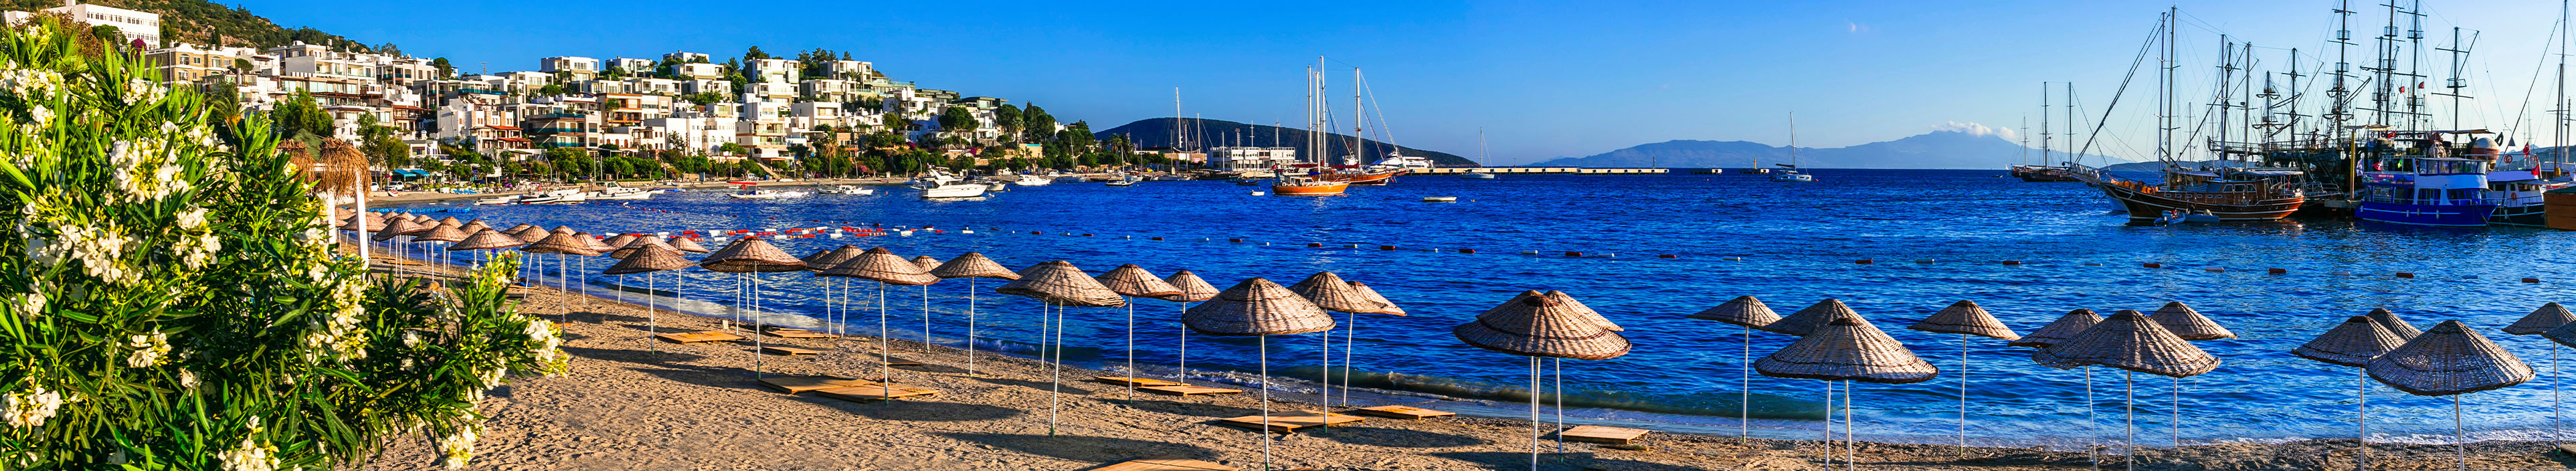 Hotel in der Türkei, Strandabschnitt mit Sonnenschirmen